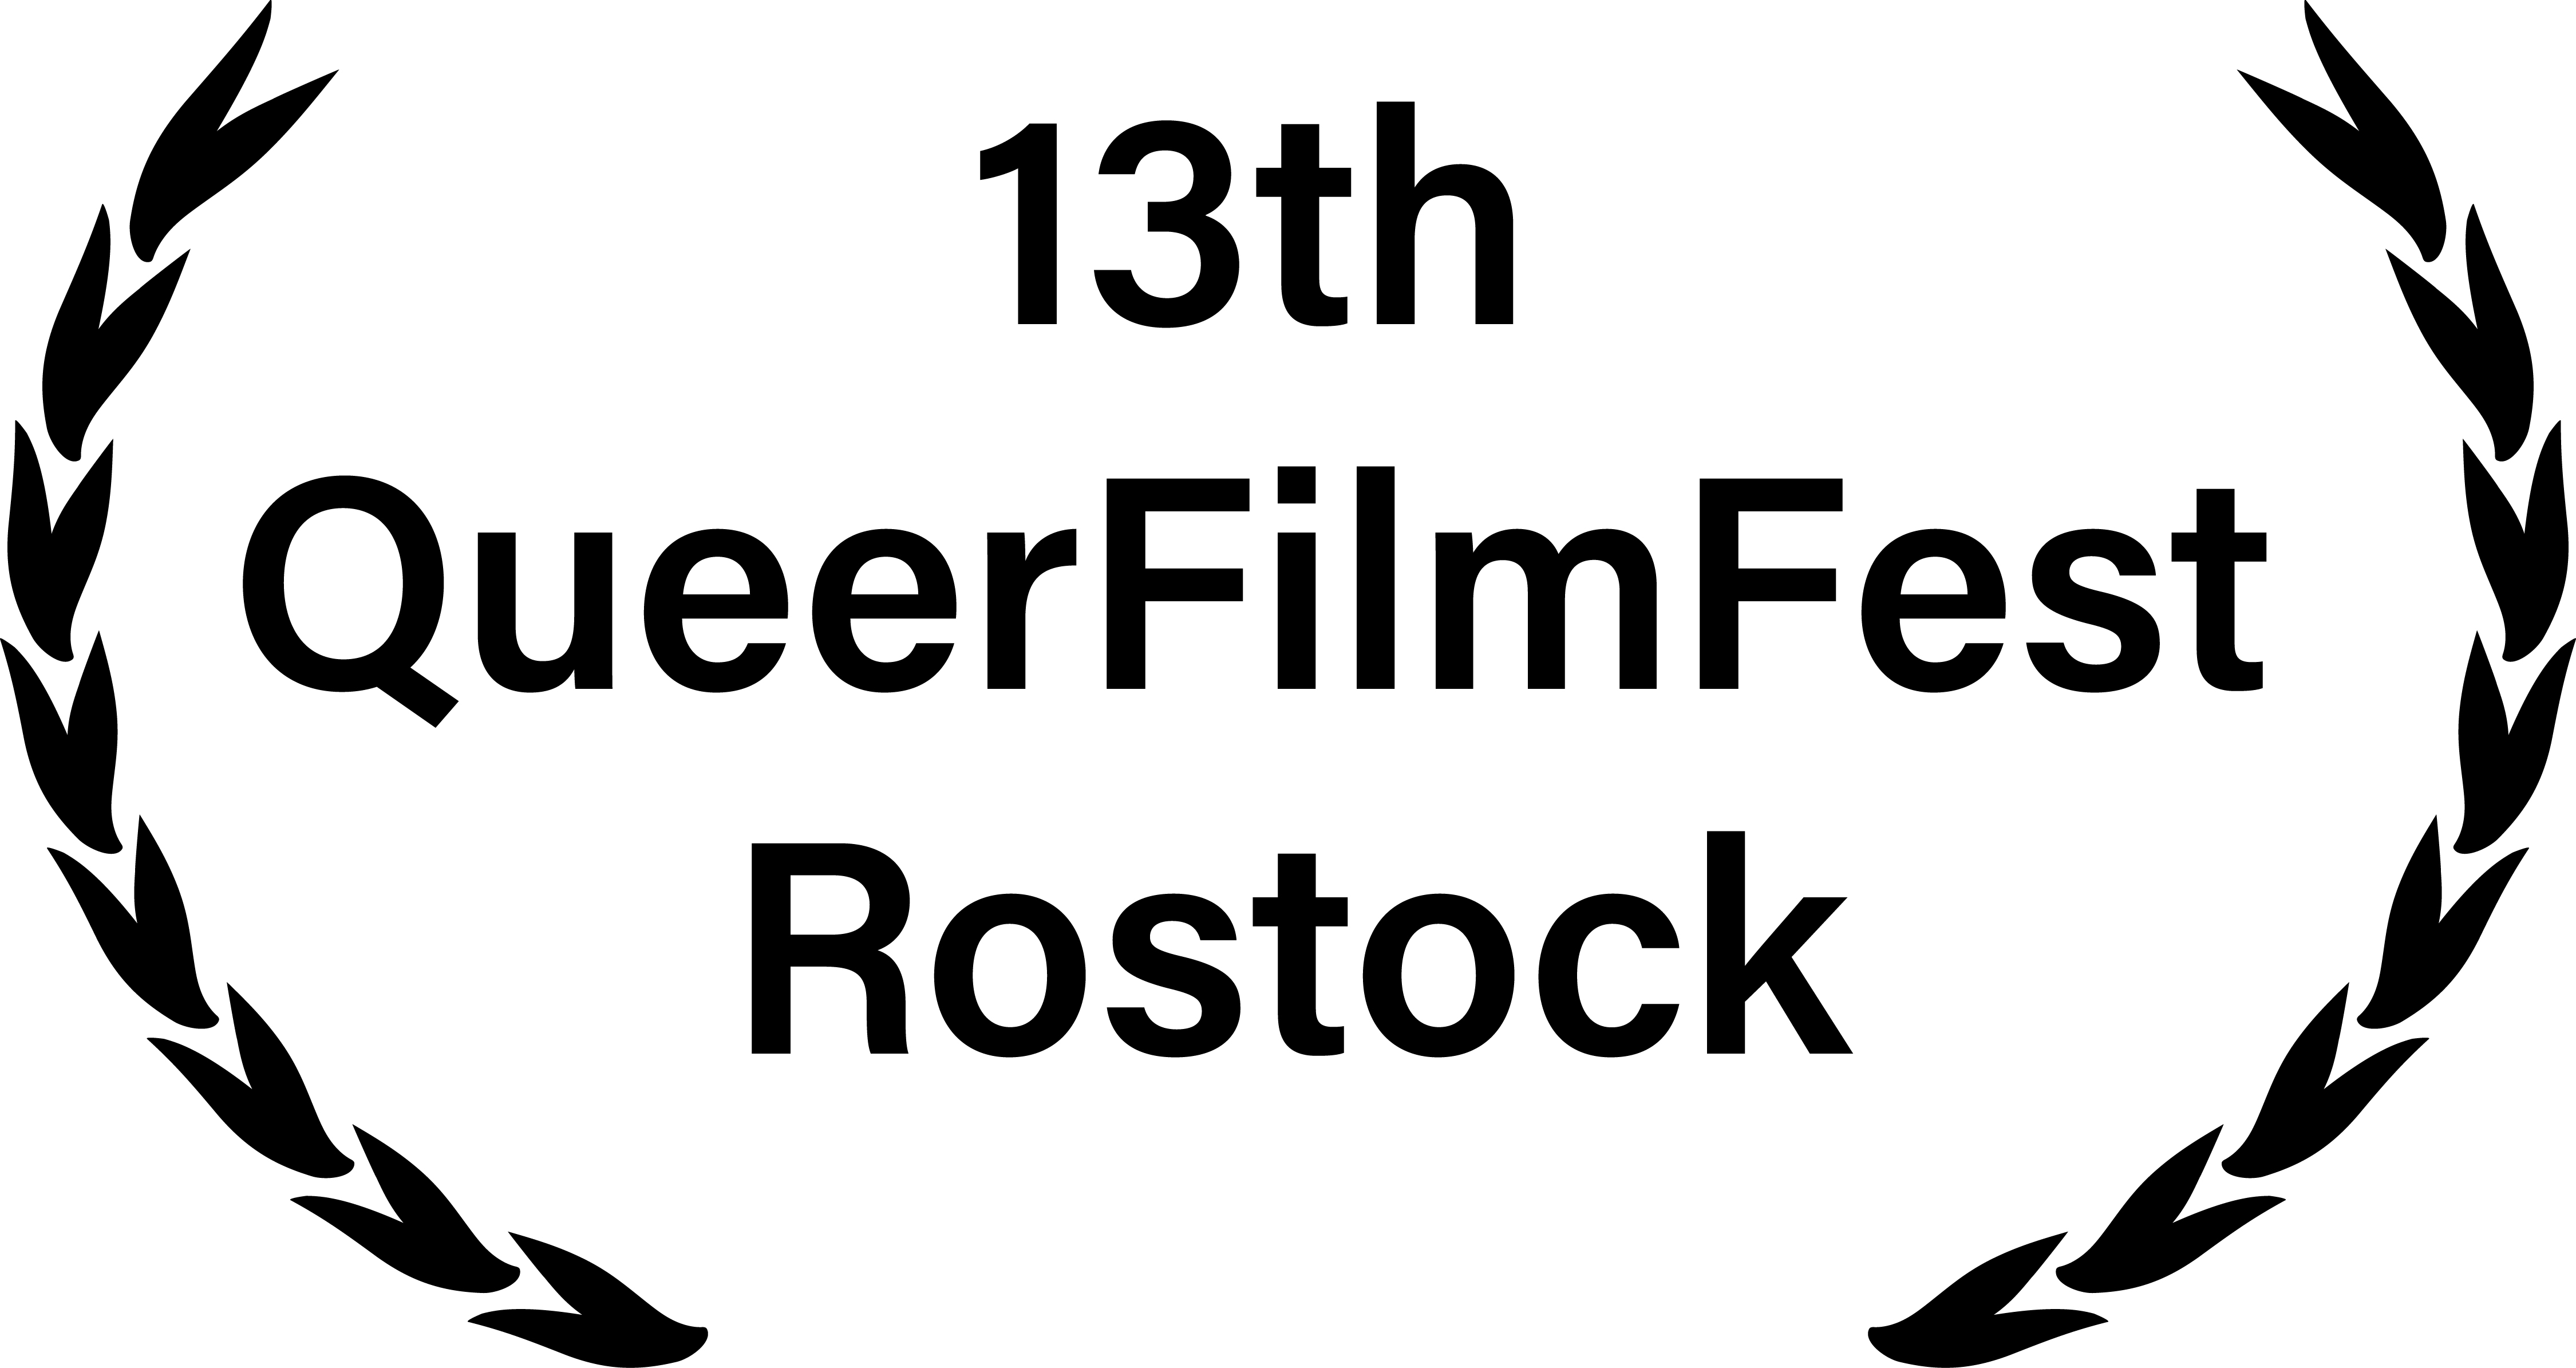 Queer Film Fest Rostock